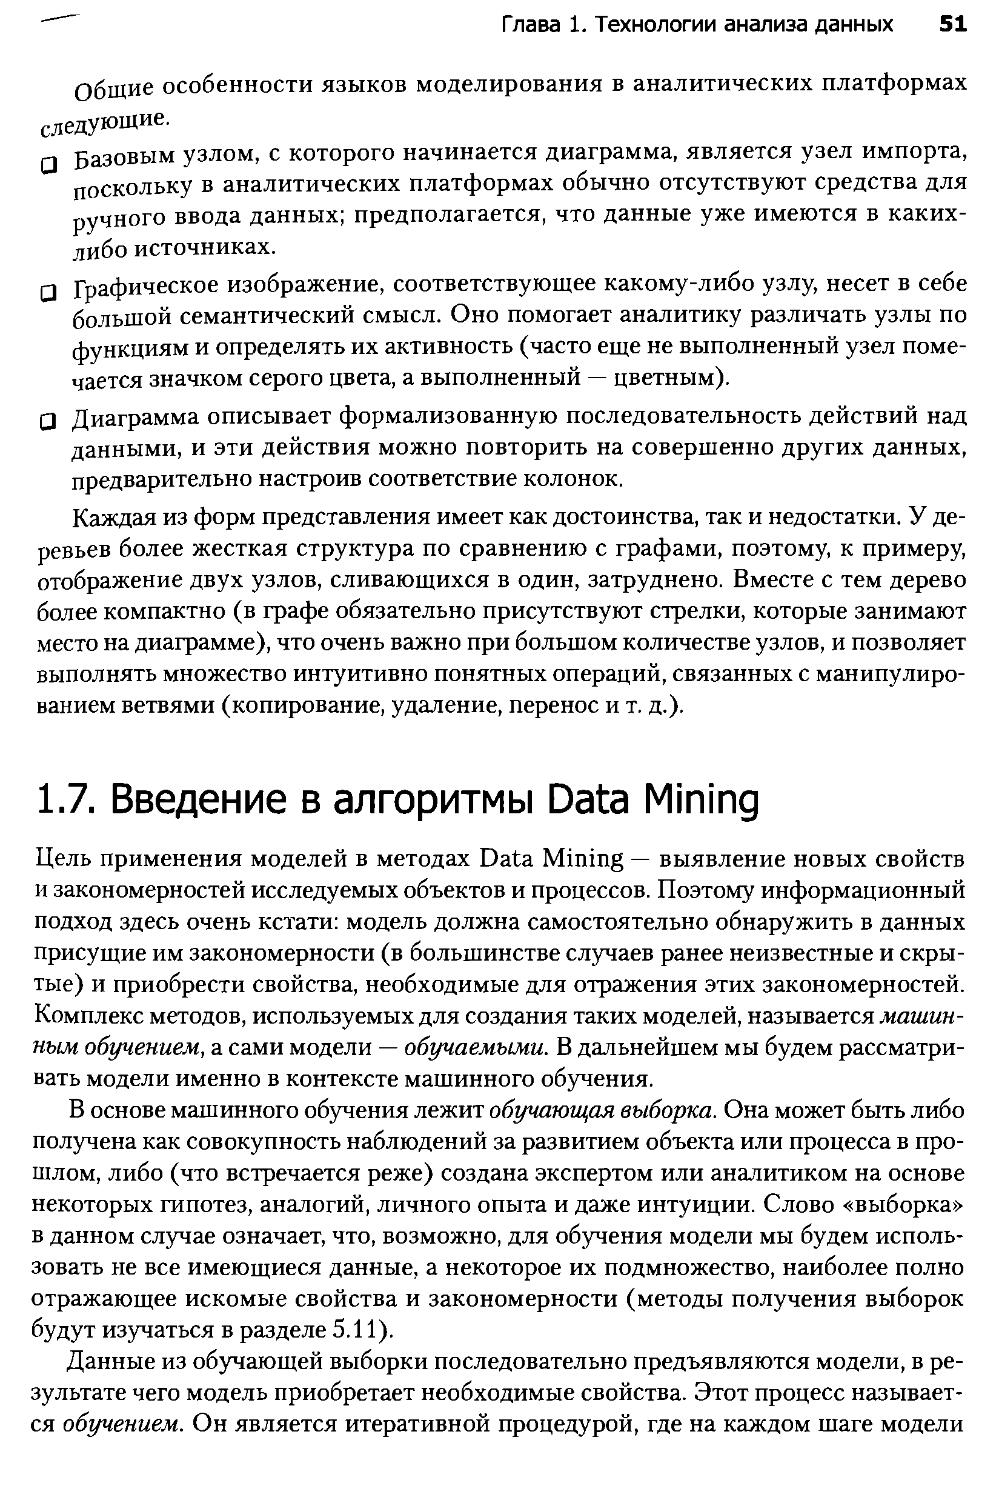 1.7.Введение в алгоритмы Data Mining